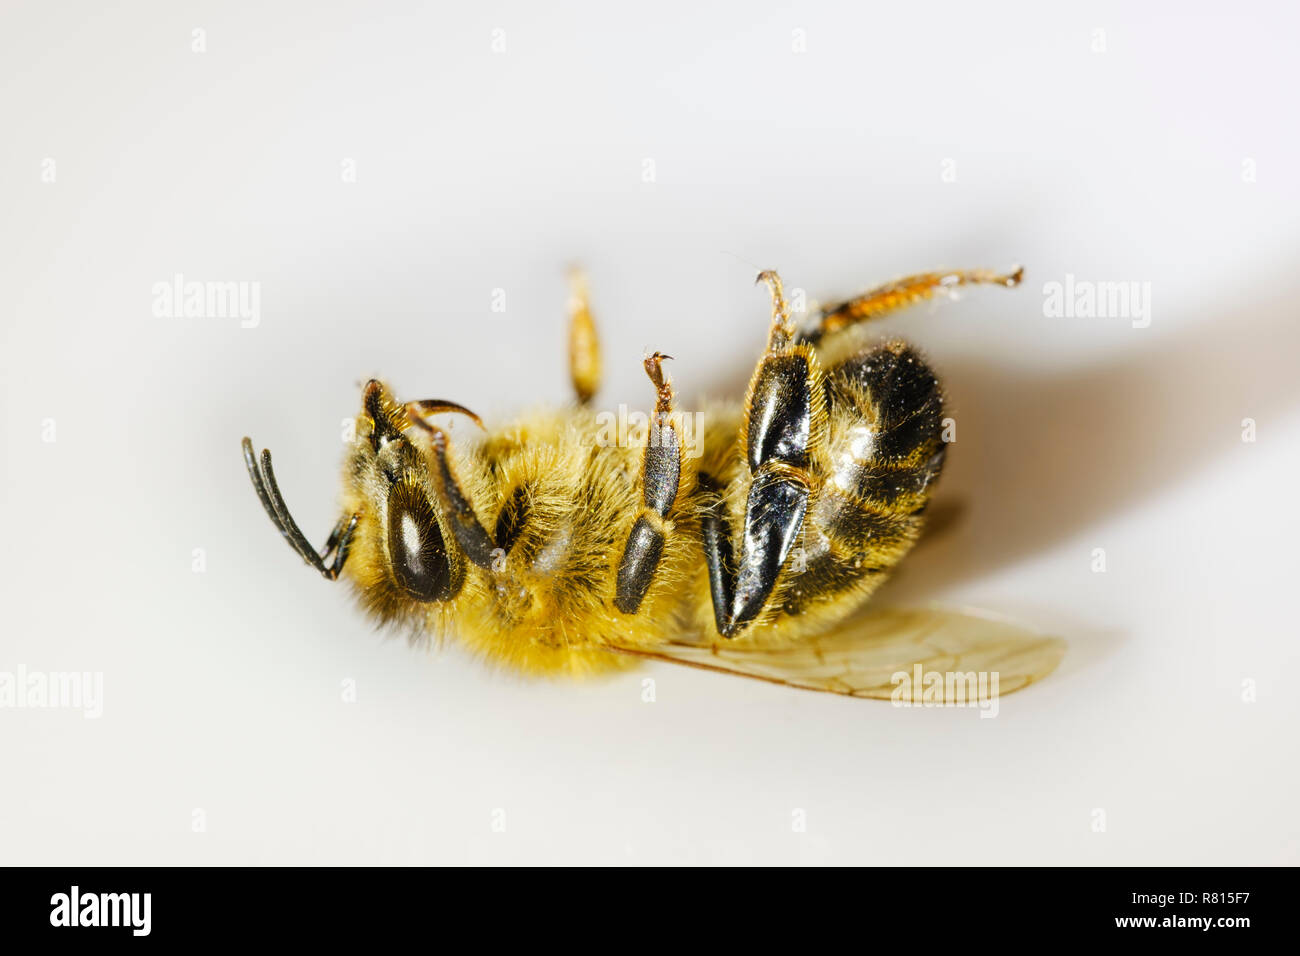 Muertos de abejas (Apis mellifera), trastorno de colapso de la colonia, la muerte de insectos, Alemania Foto de stock